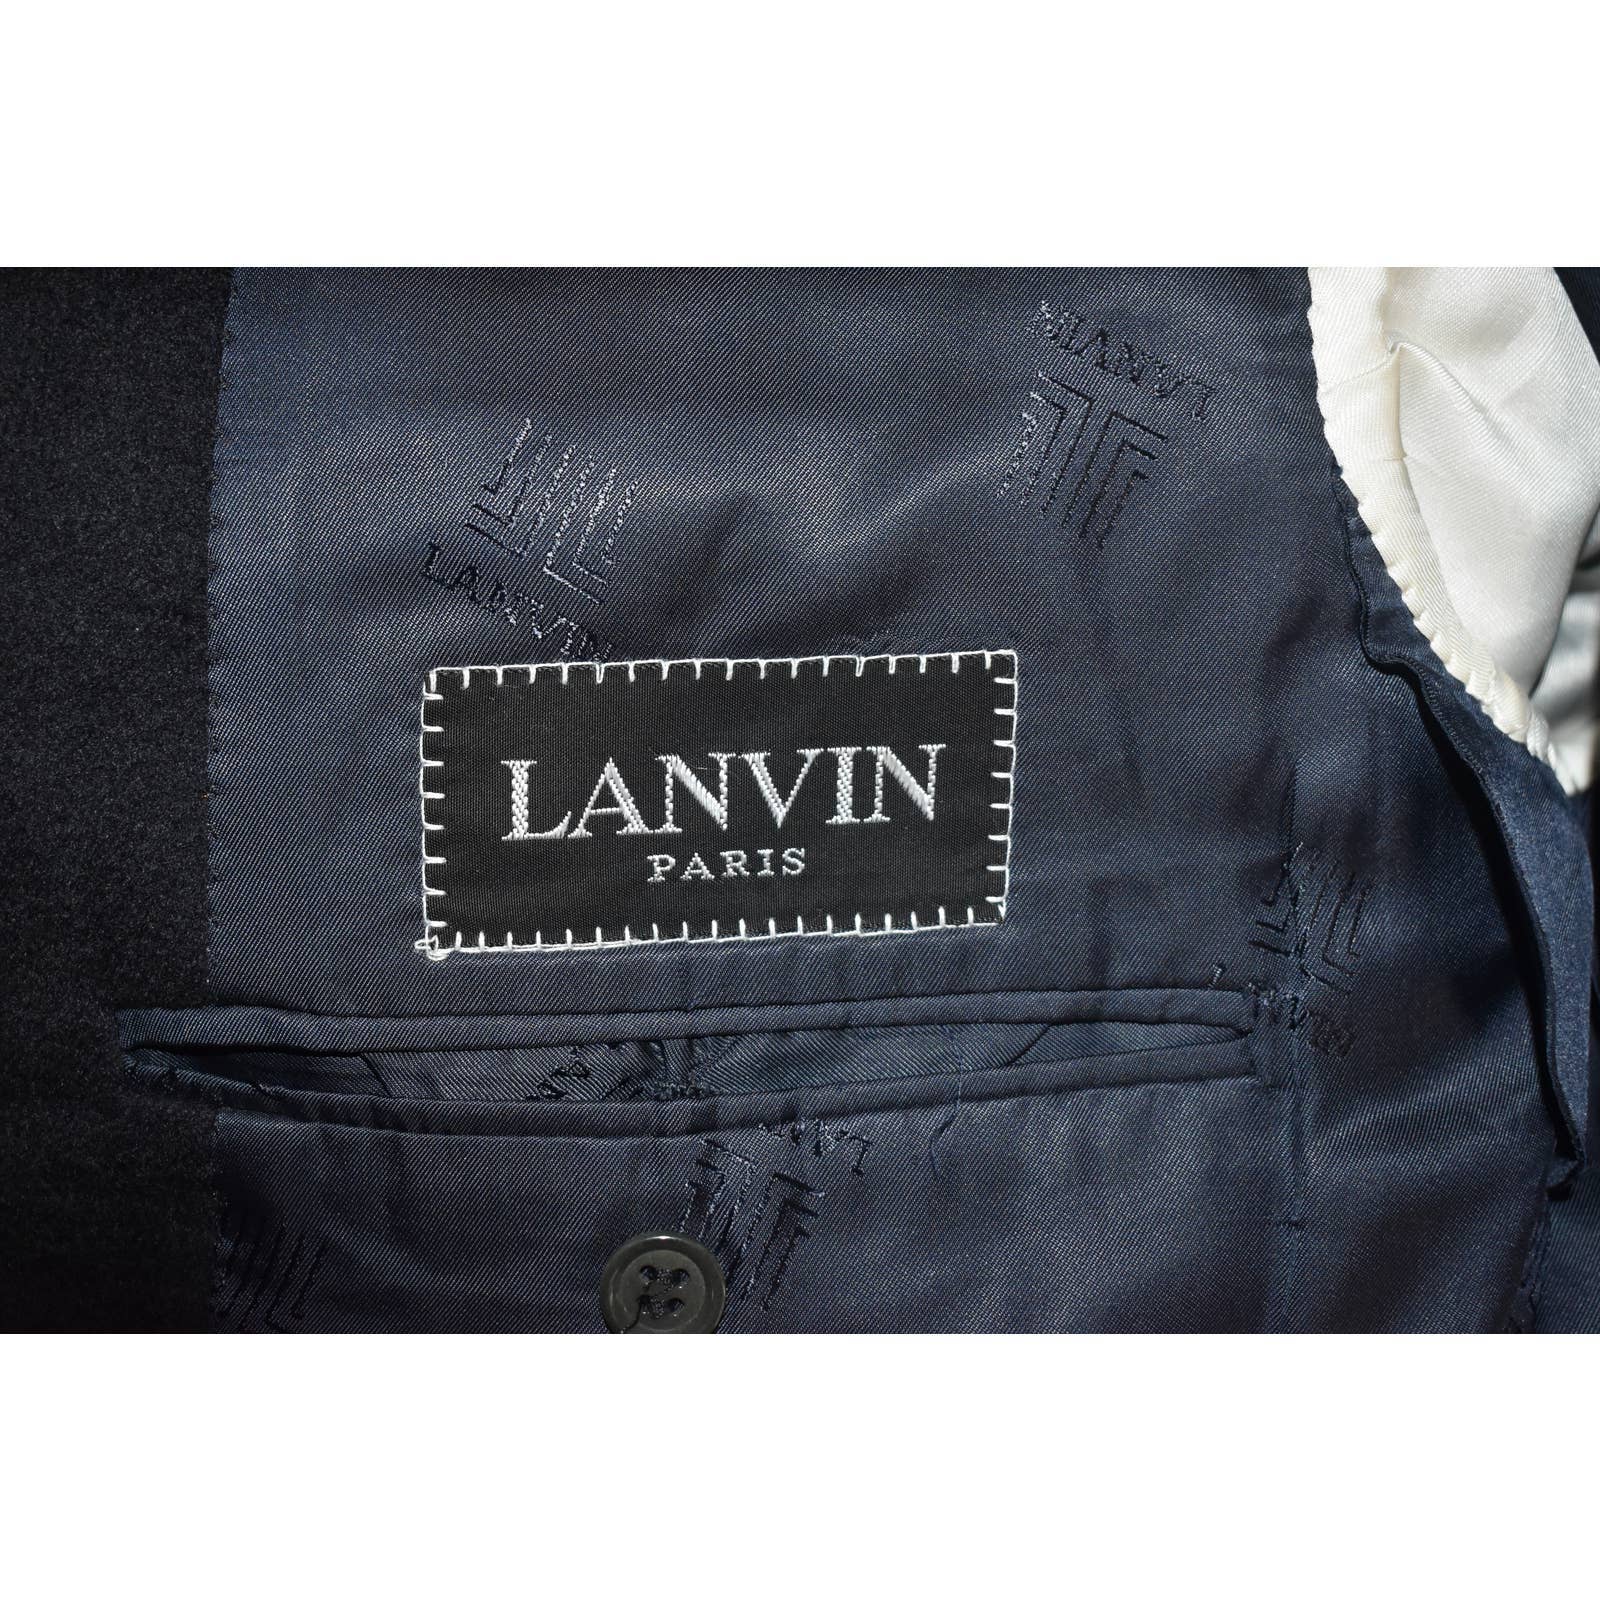 Lanvin 100% Cashmere Black Two Button Single Breasted Blazer - 52R / 42R US